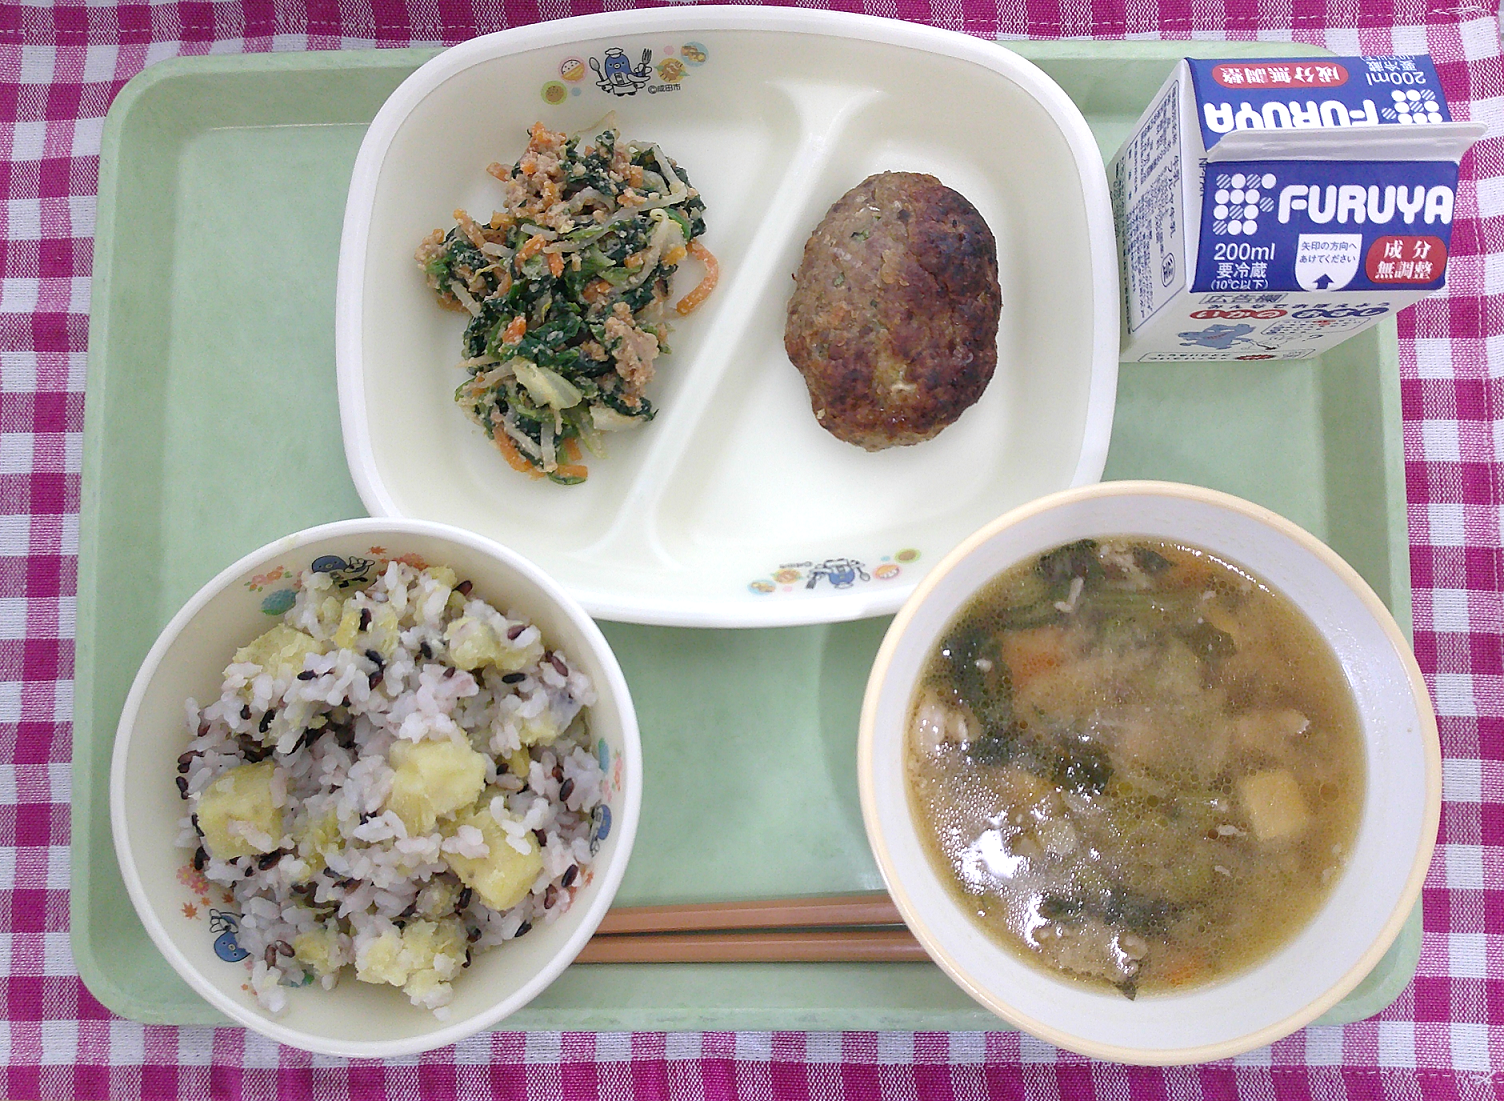 本城小学校共同調理場の成田給食の日の給食写真